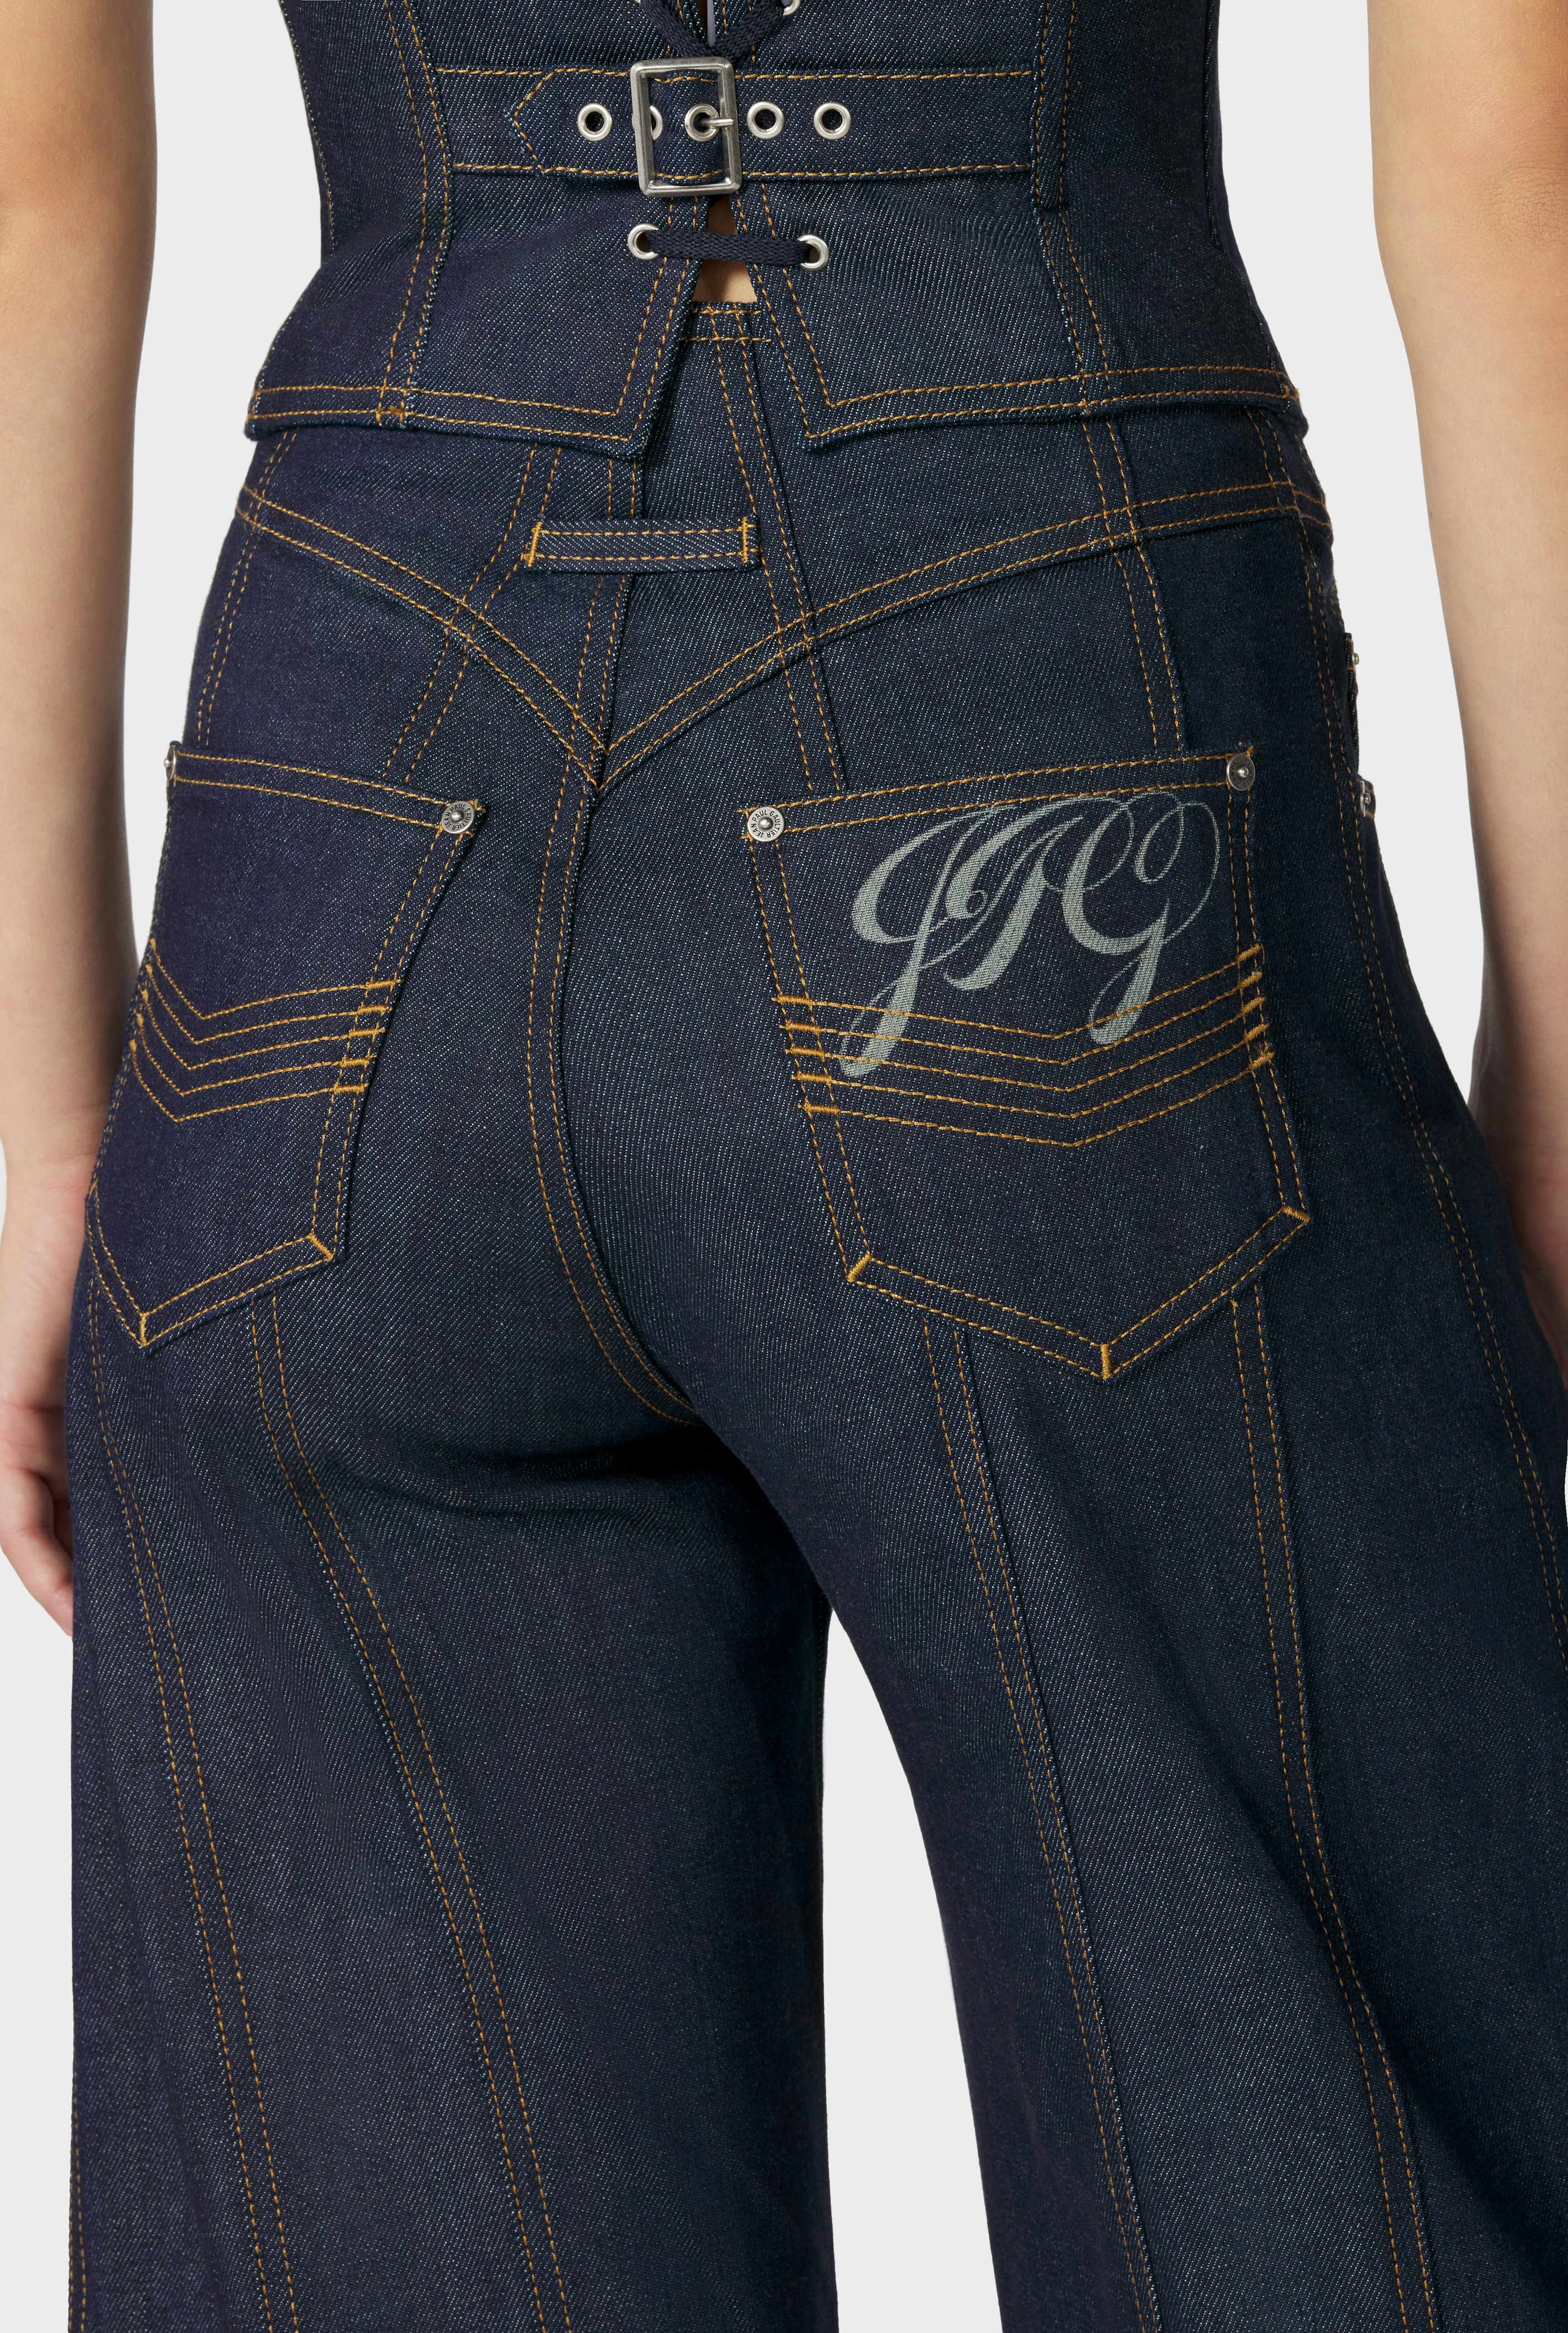 The JPG Jeans Jean Paul Gaultier